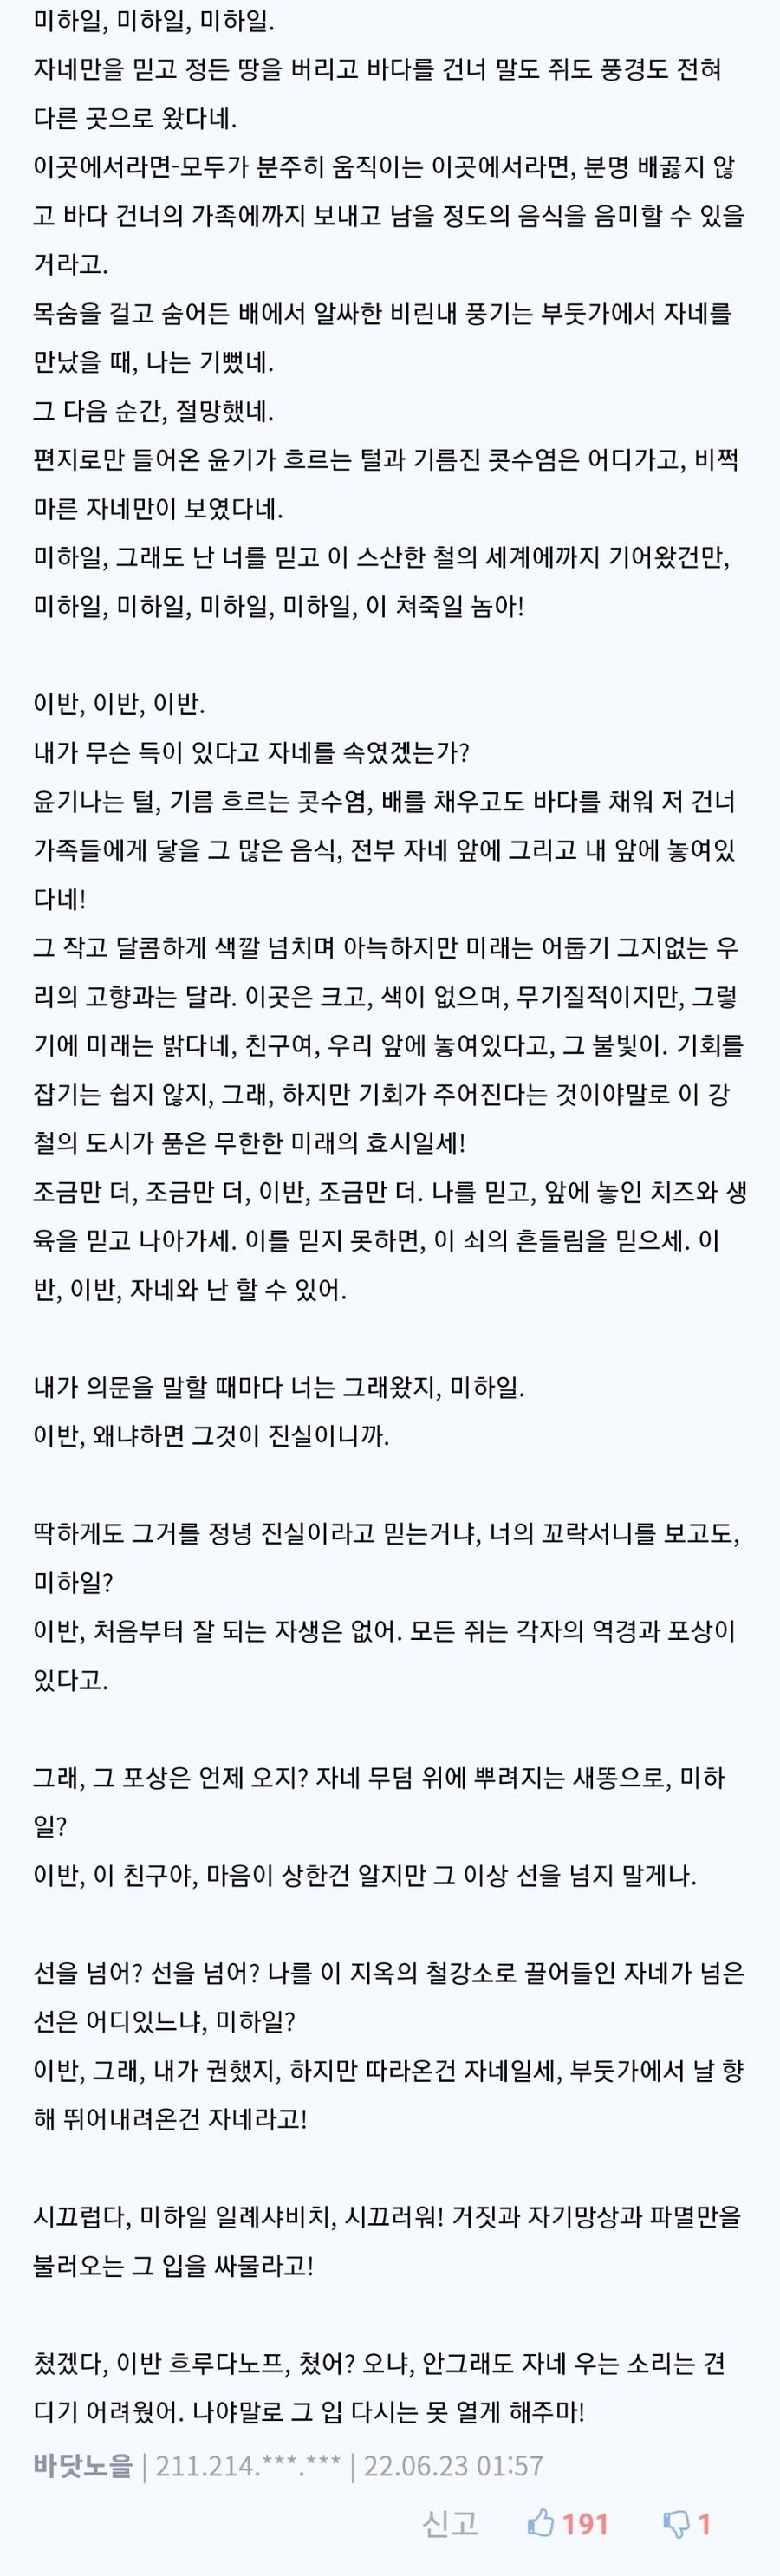 [유머] 시골쥐와 서울쥐 댓글 문학 걸작선 -  와이드섬